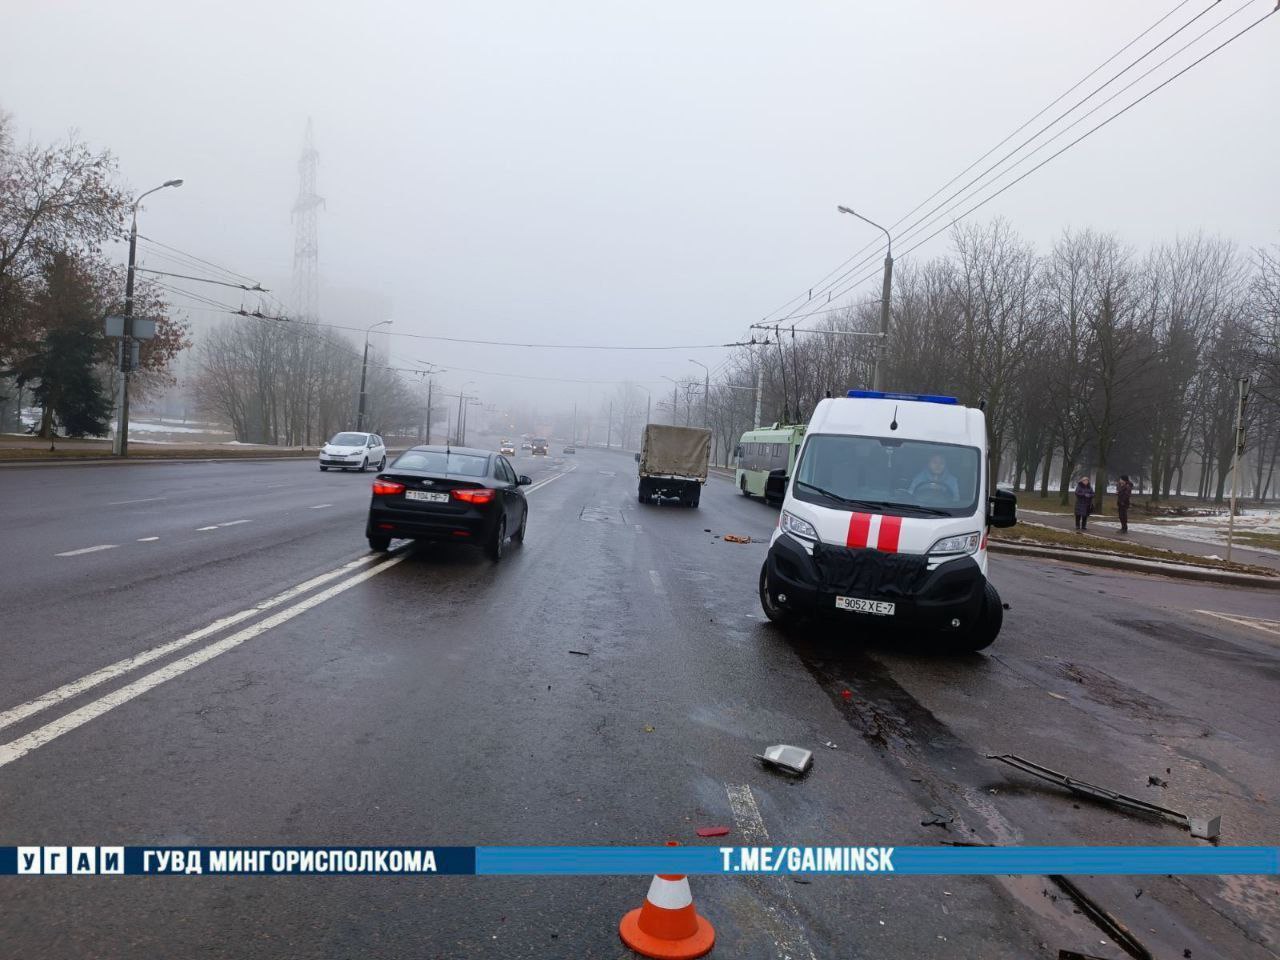 Микроавтобус столкнулся с машиной дорожных работ в Минске. Пострадали два человека